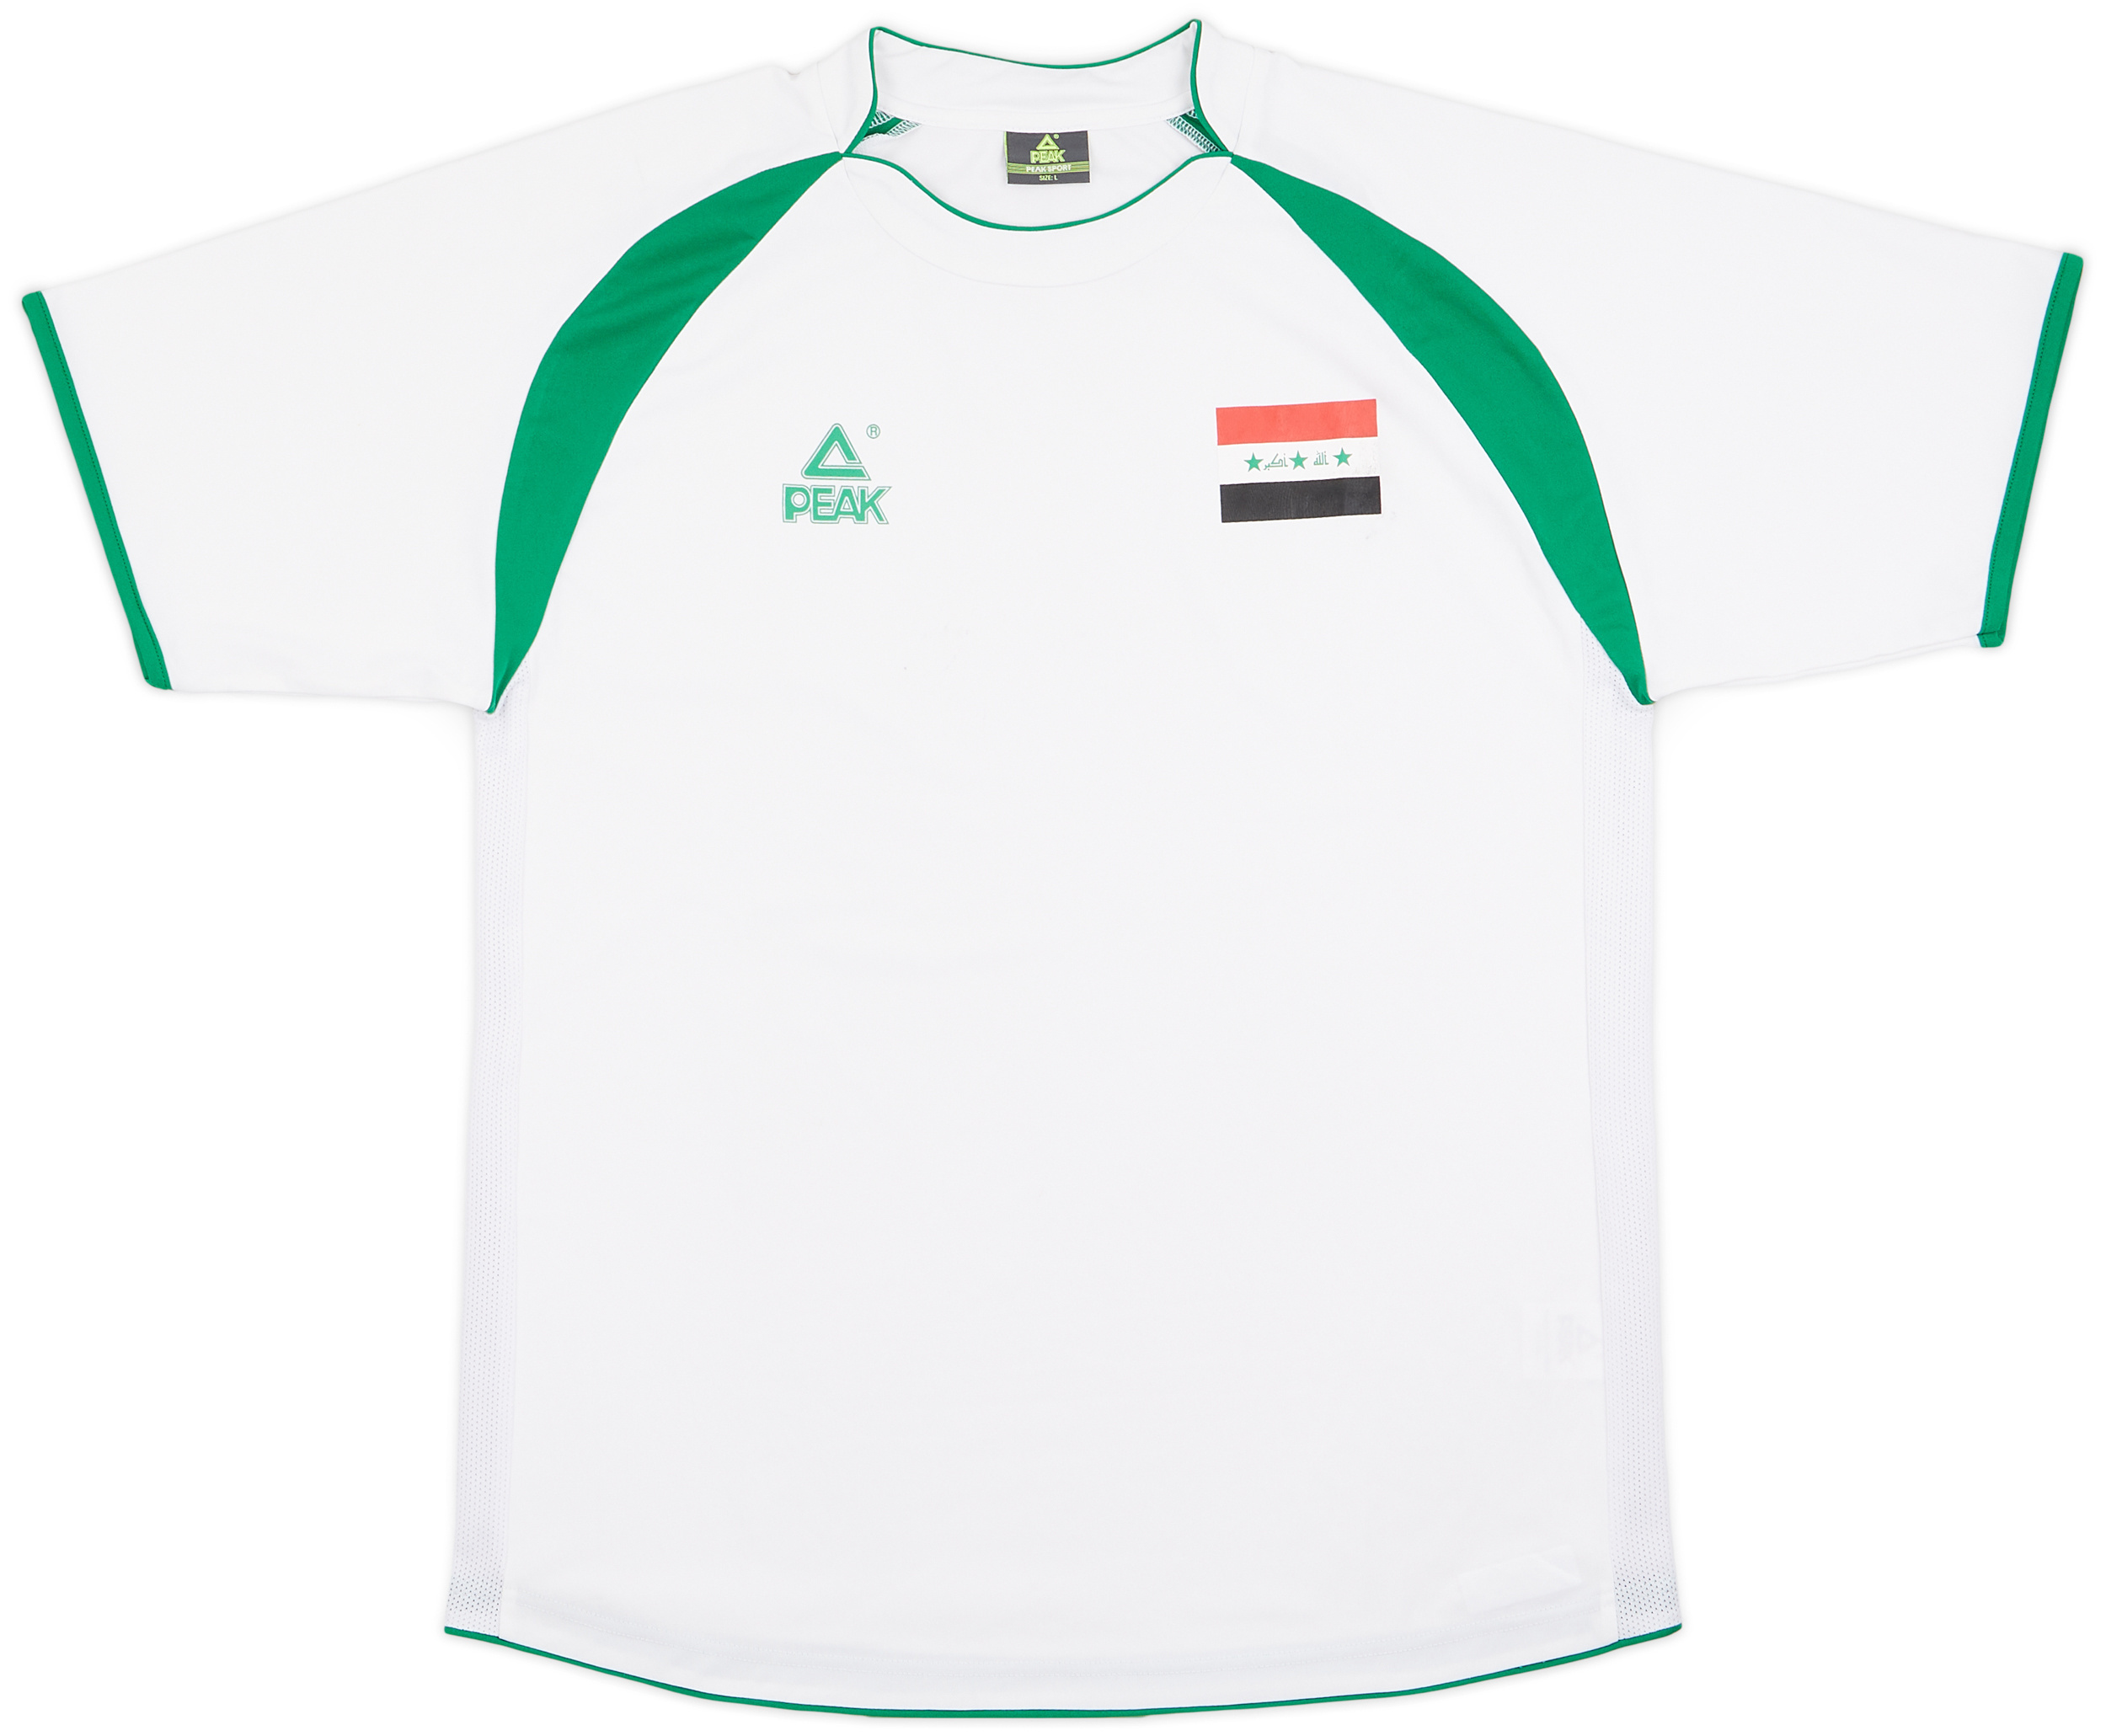 2009-11 Iraq Home Shirt - 7/10 - ()